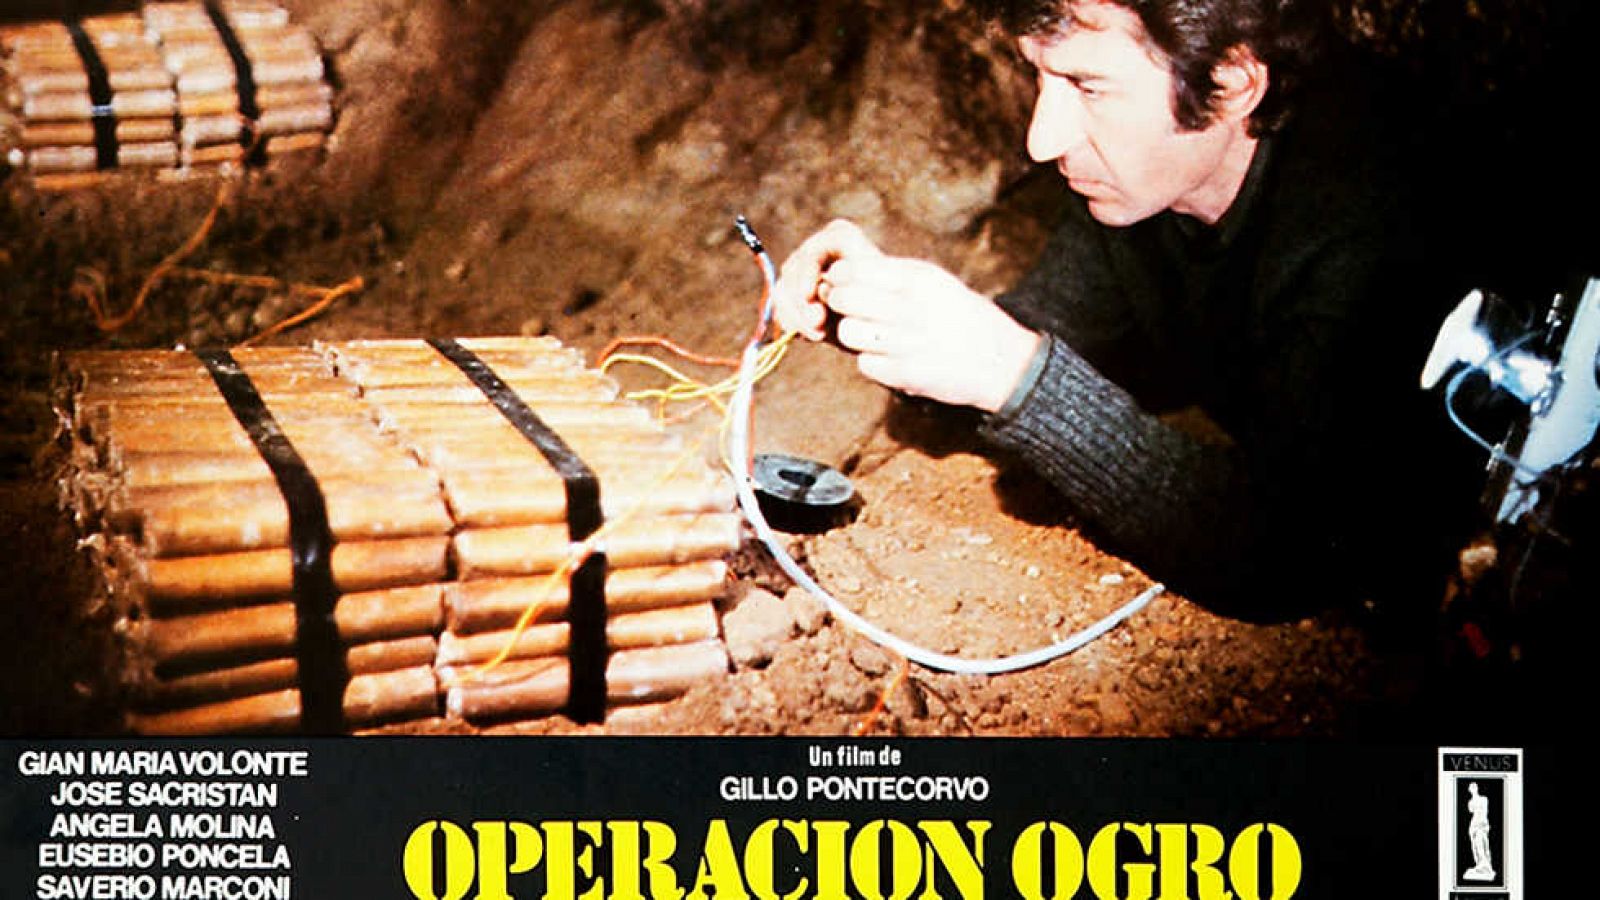 Historia de nuestro cine - Operación ogro